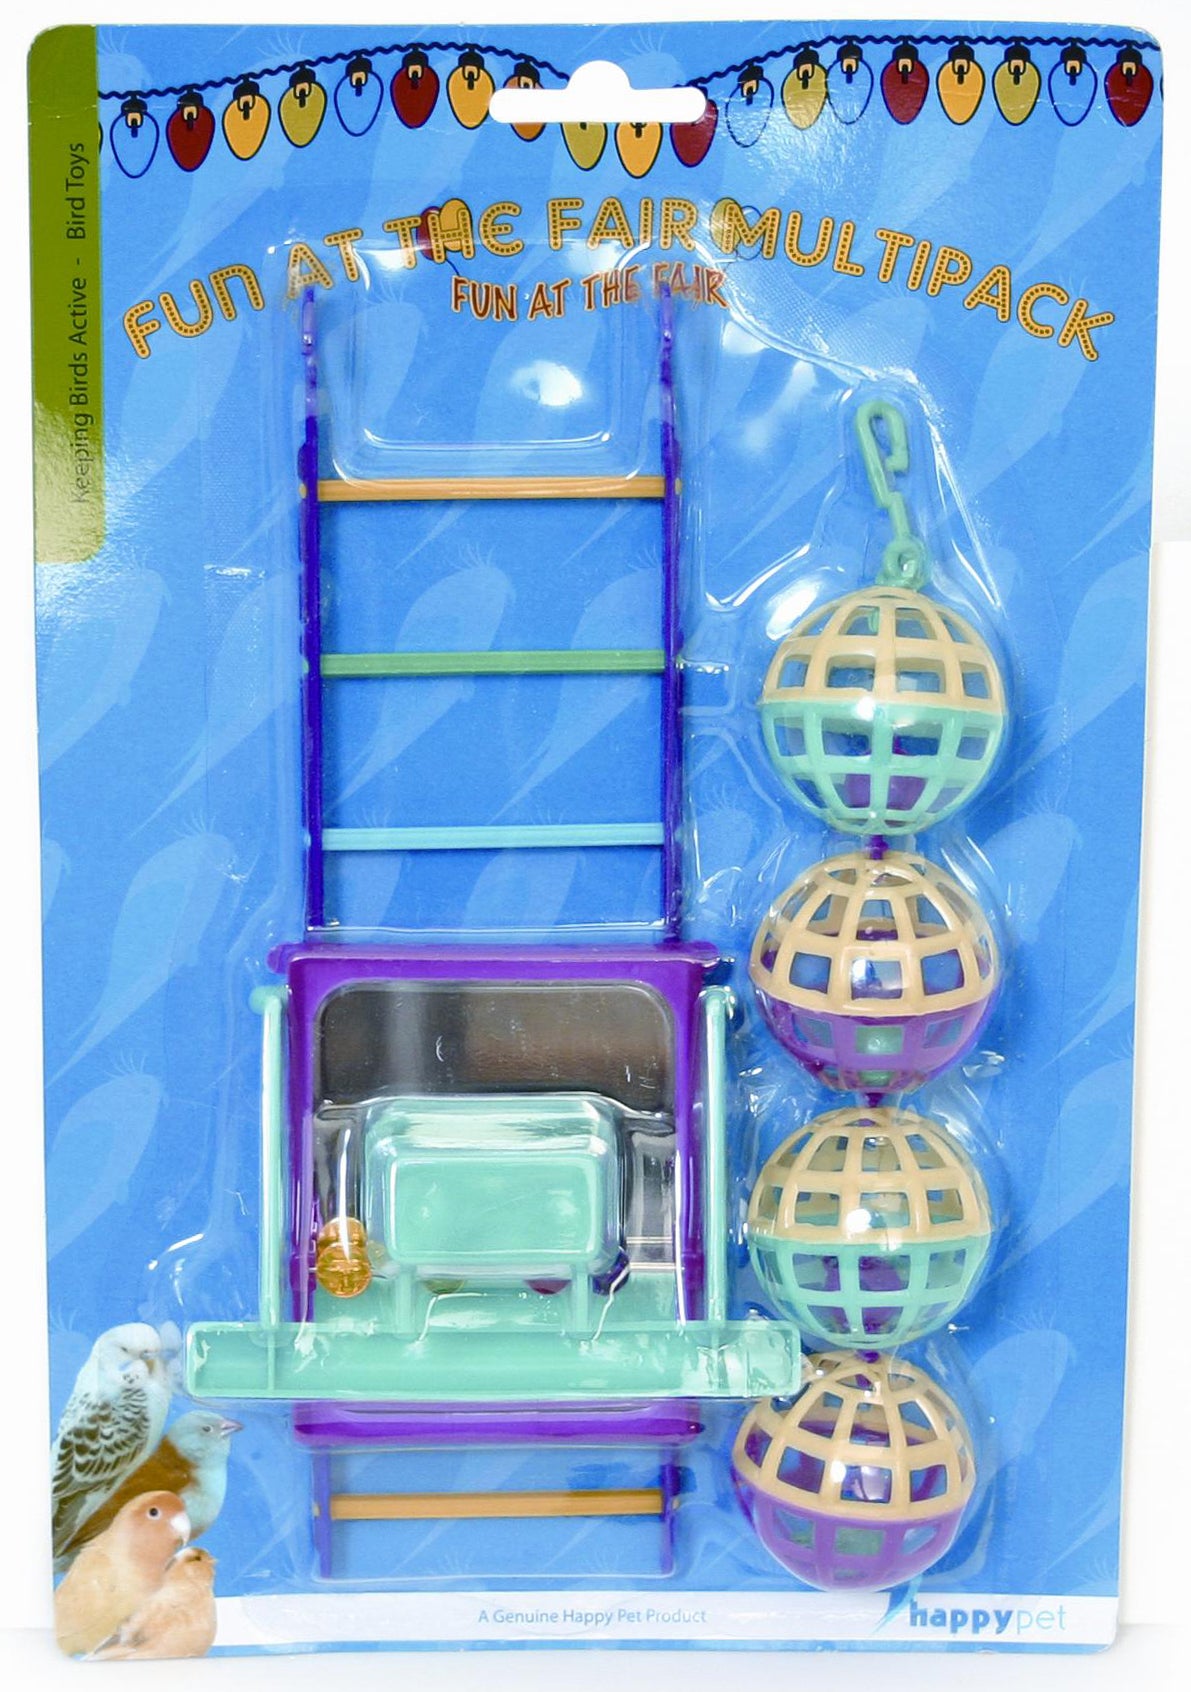 HappyPet Parkieten speelgoed met bal, ladder en stok